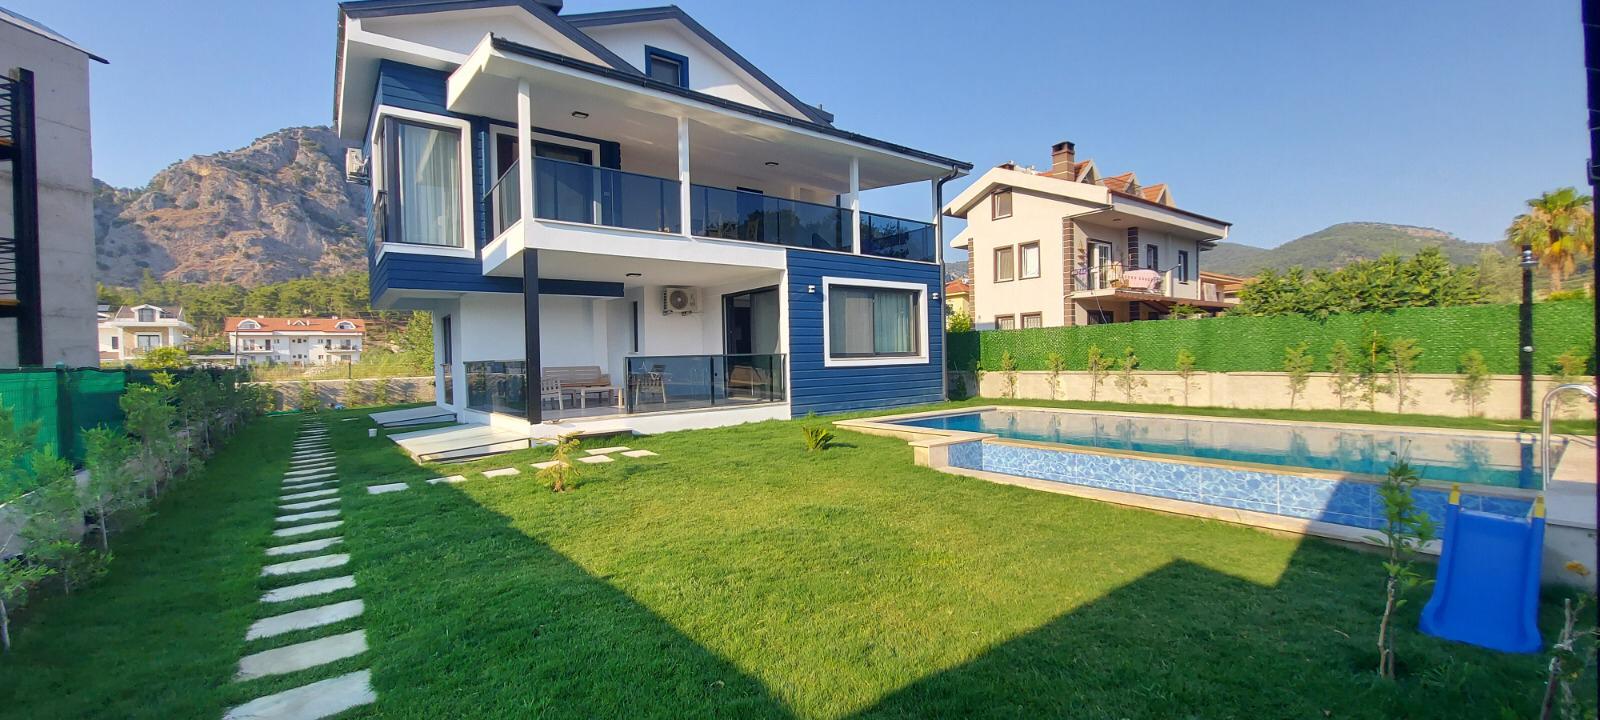 5 Bedroom Villa for Rent in Gocek. Private Garden and Pool